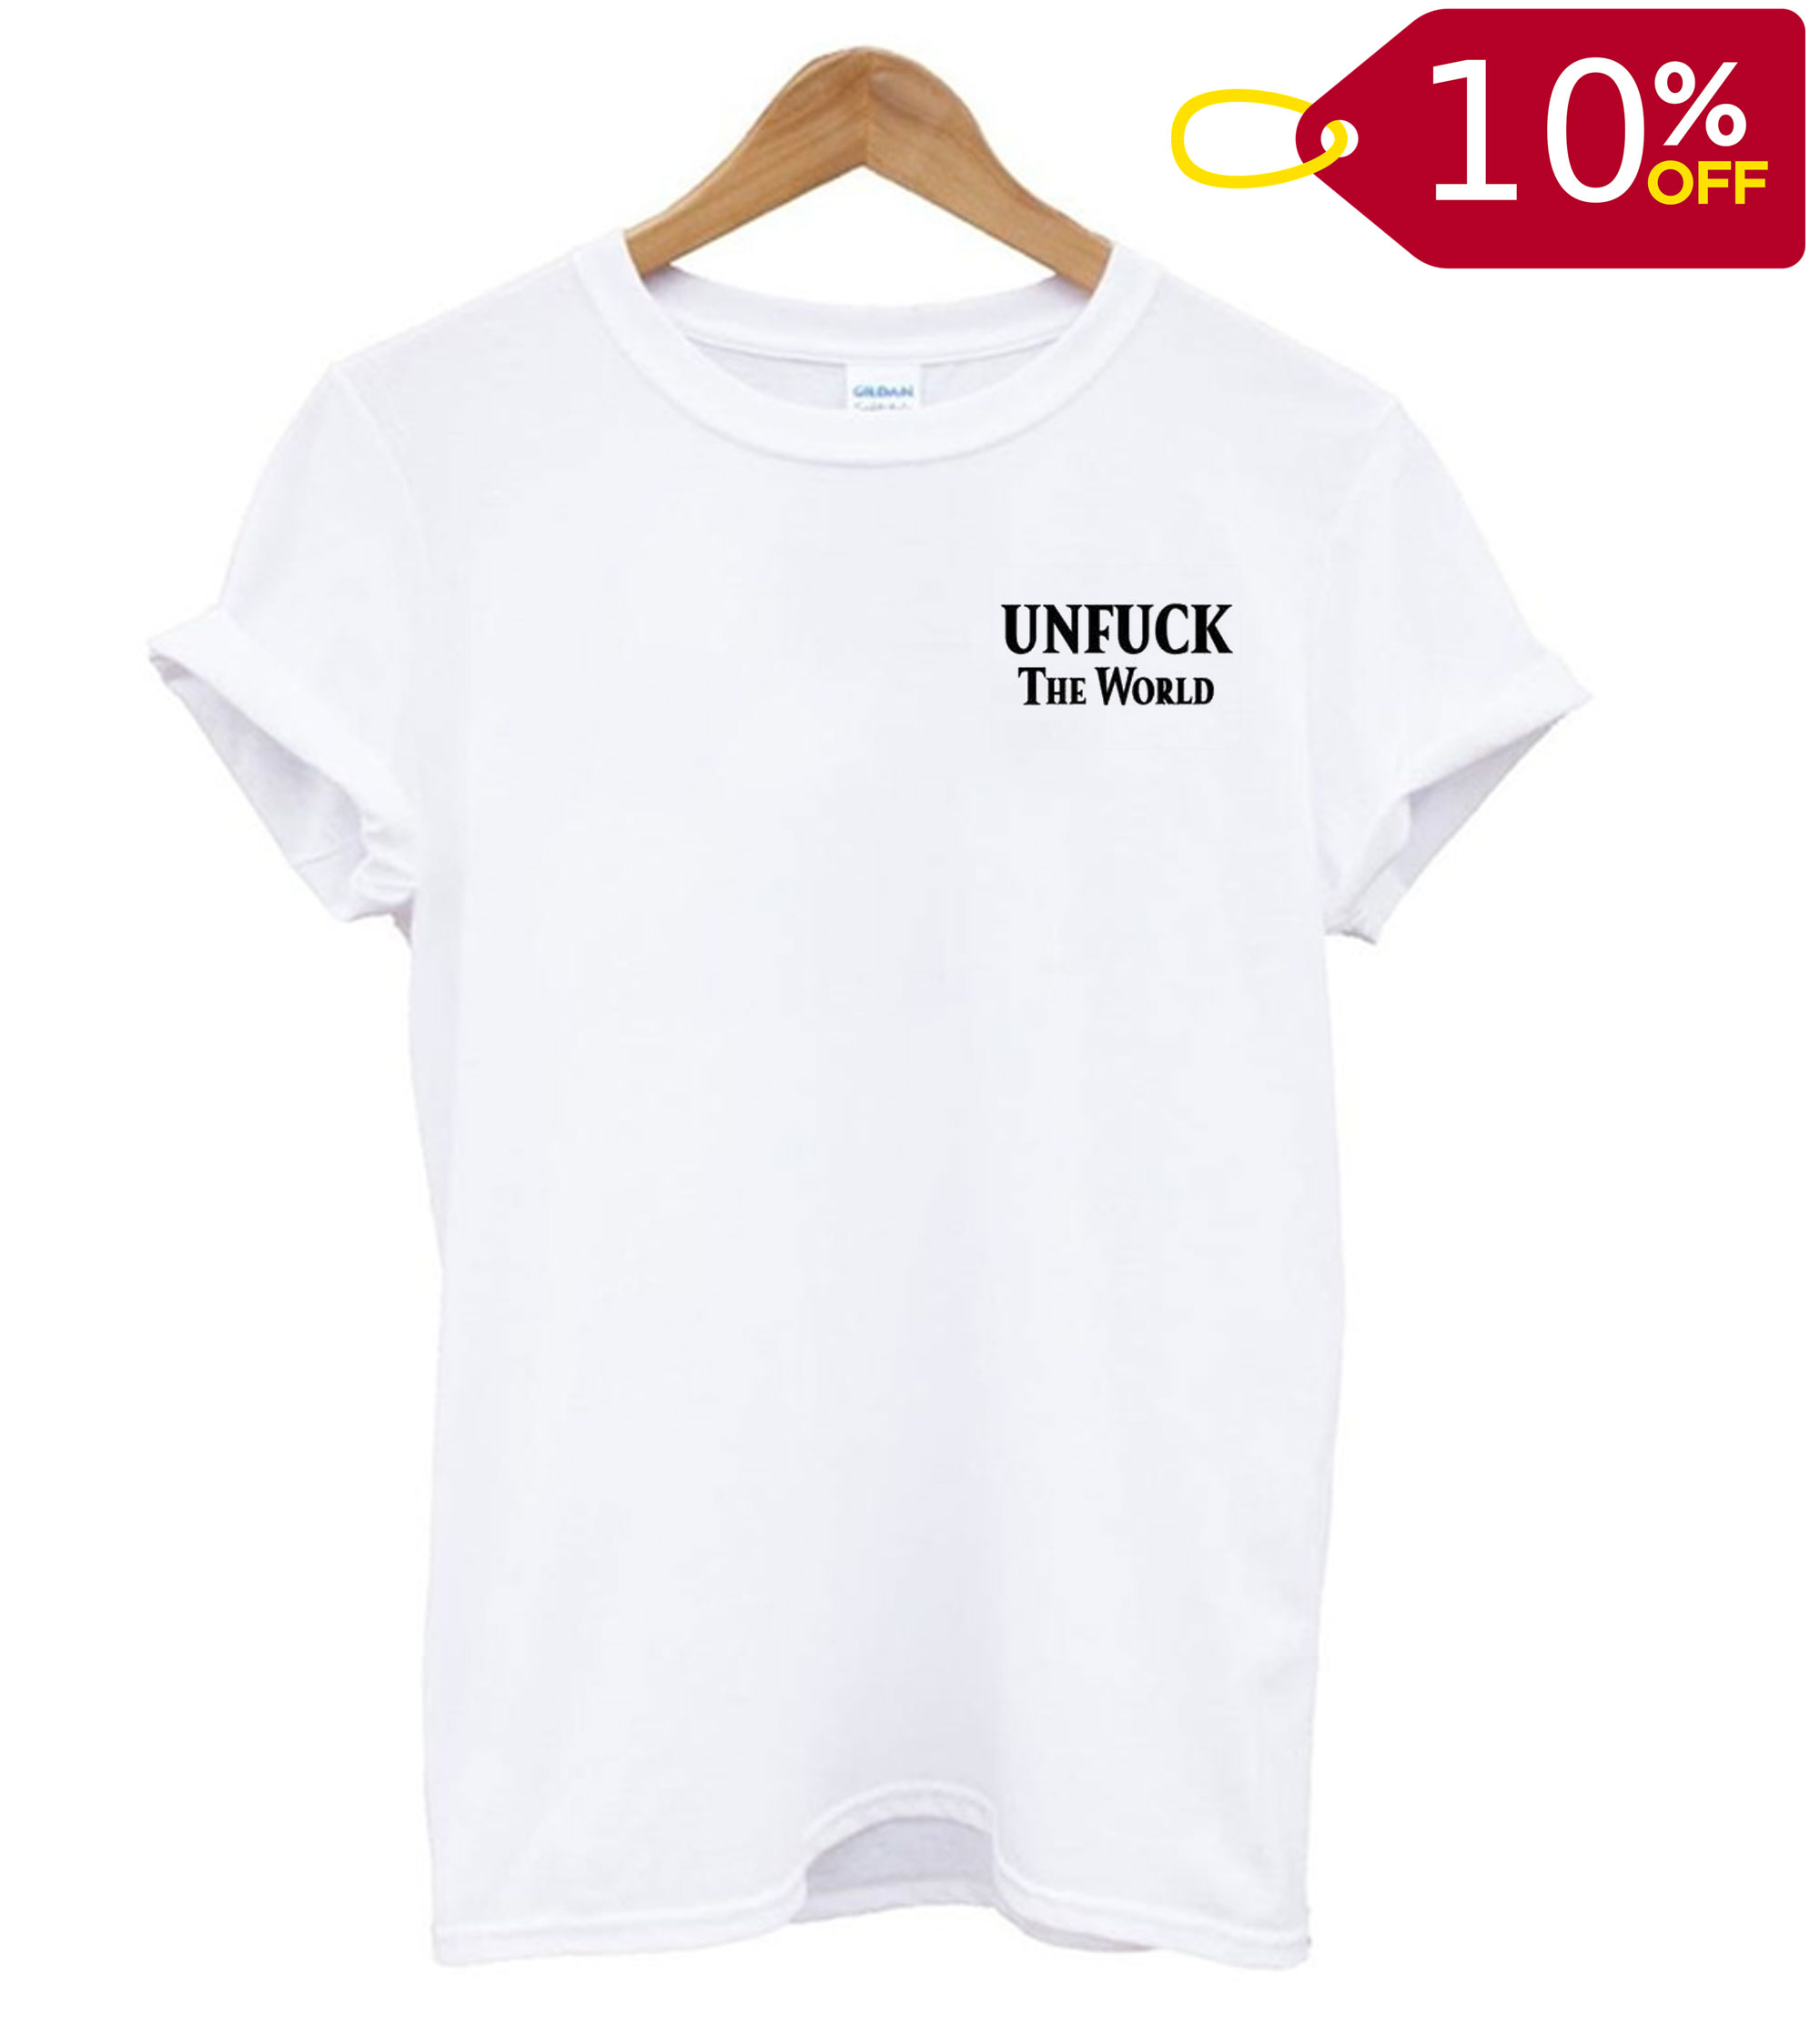 Unfuck The World T shirt